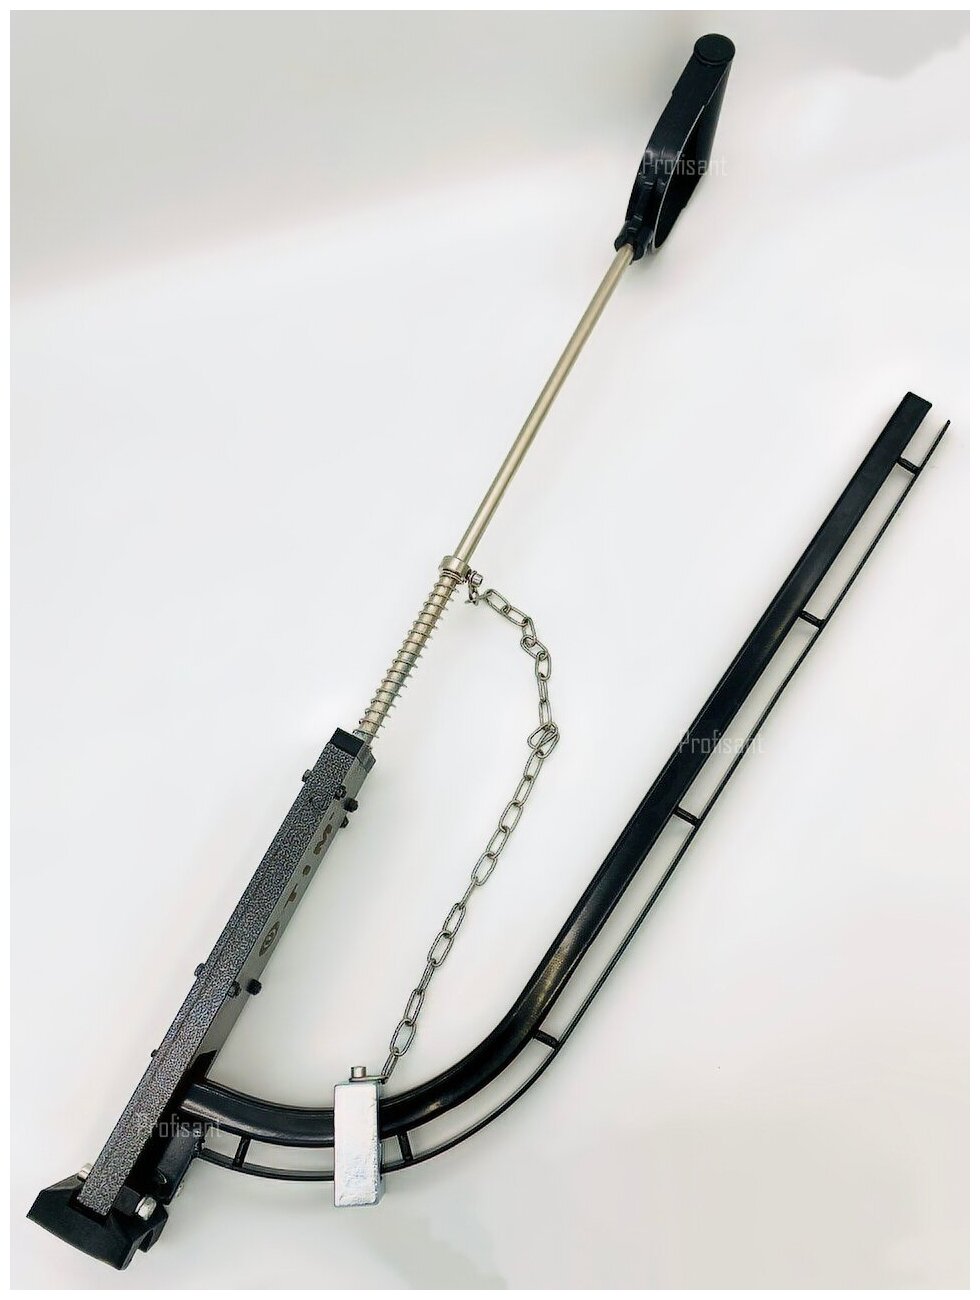 Такер (степлер) для укладки труб теплого пола TIM арт. JU1620S1